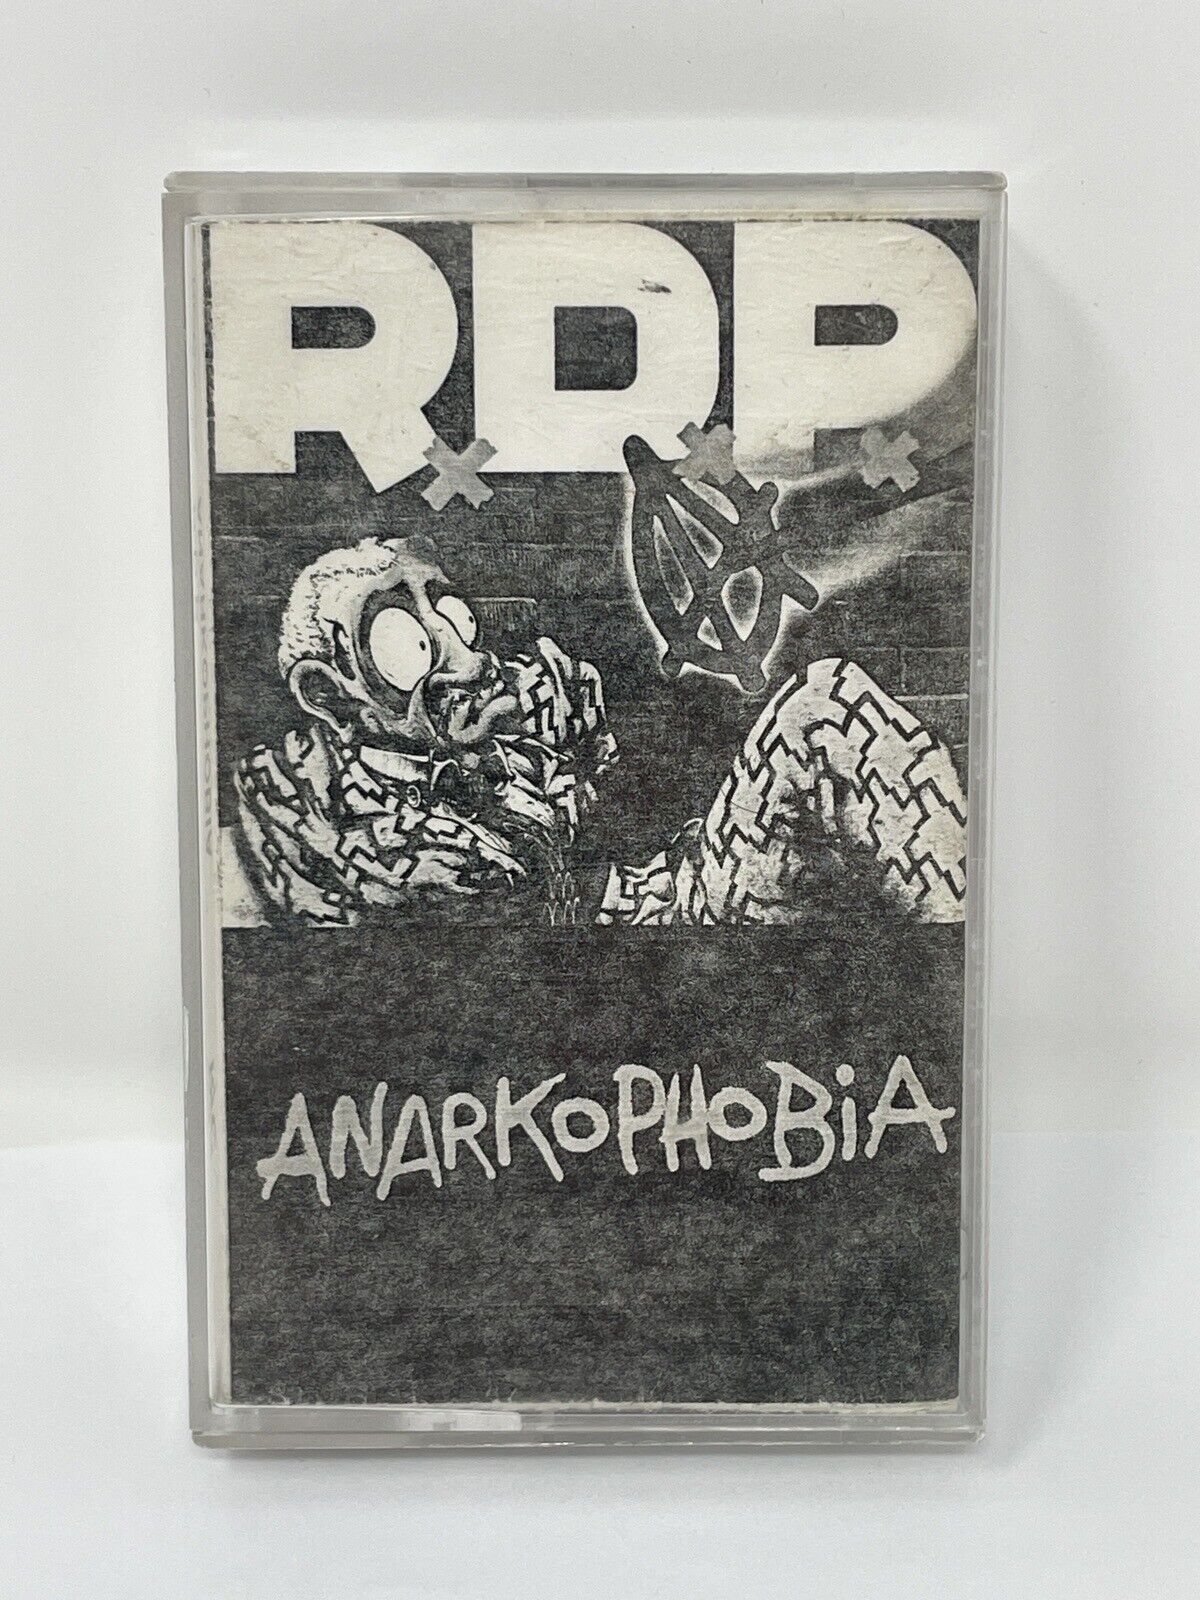 Rare 1991 Punk Cassette Tape R.D.P. RxDxPx - Anarkophobia 